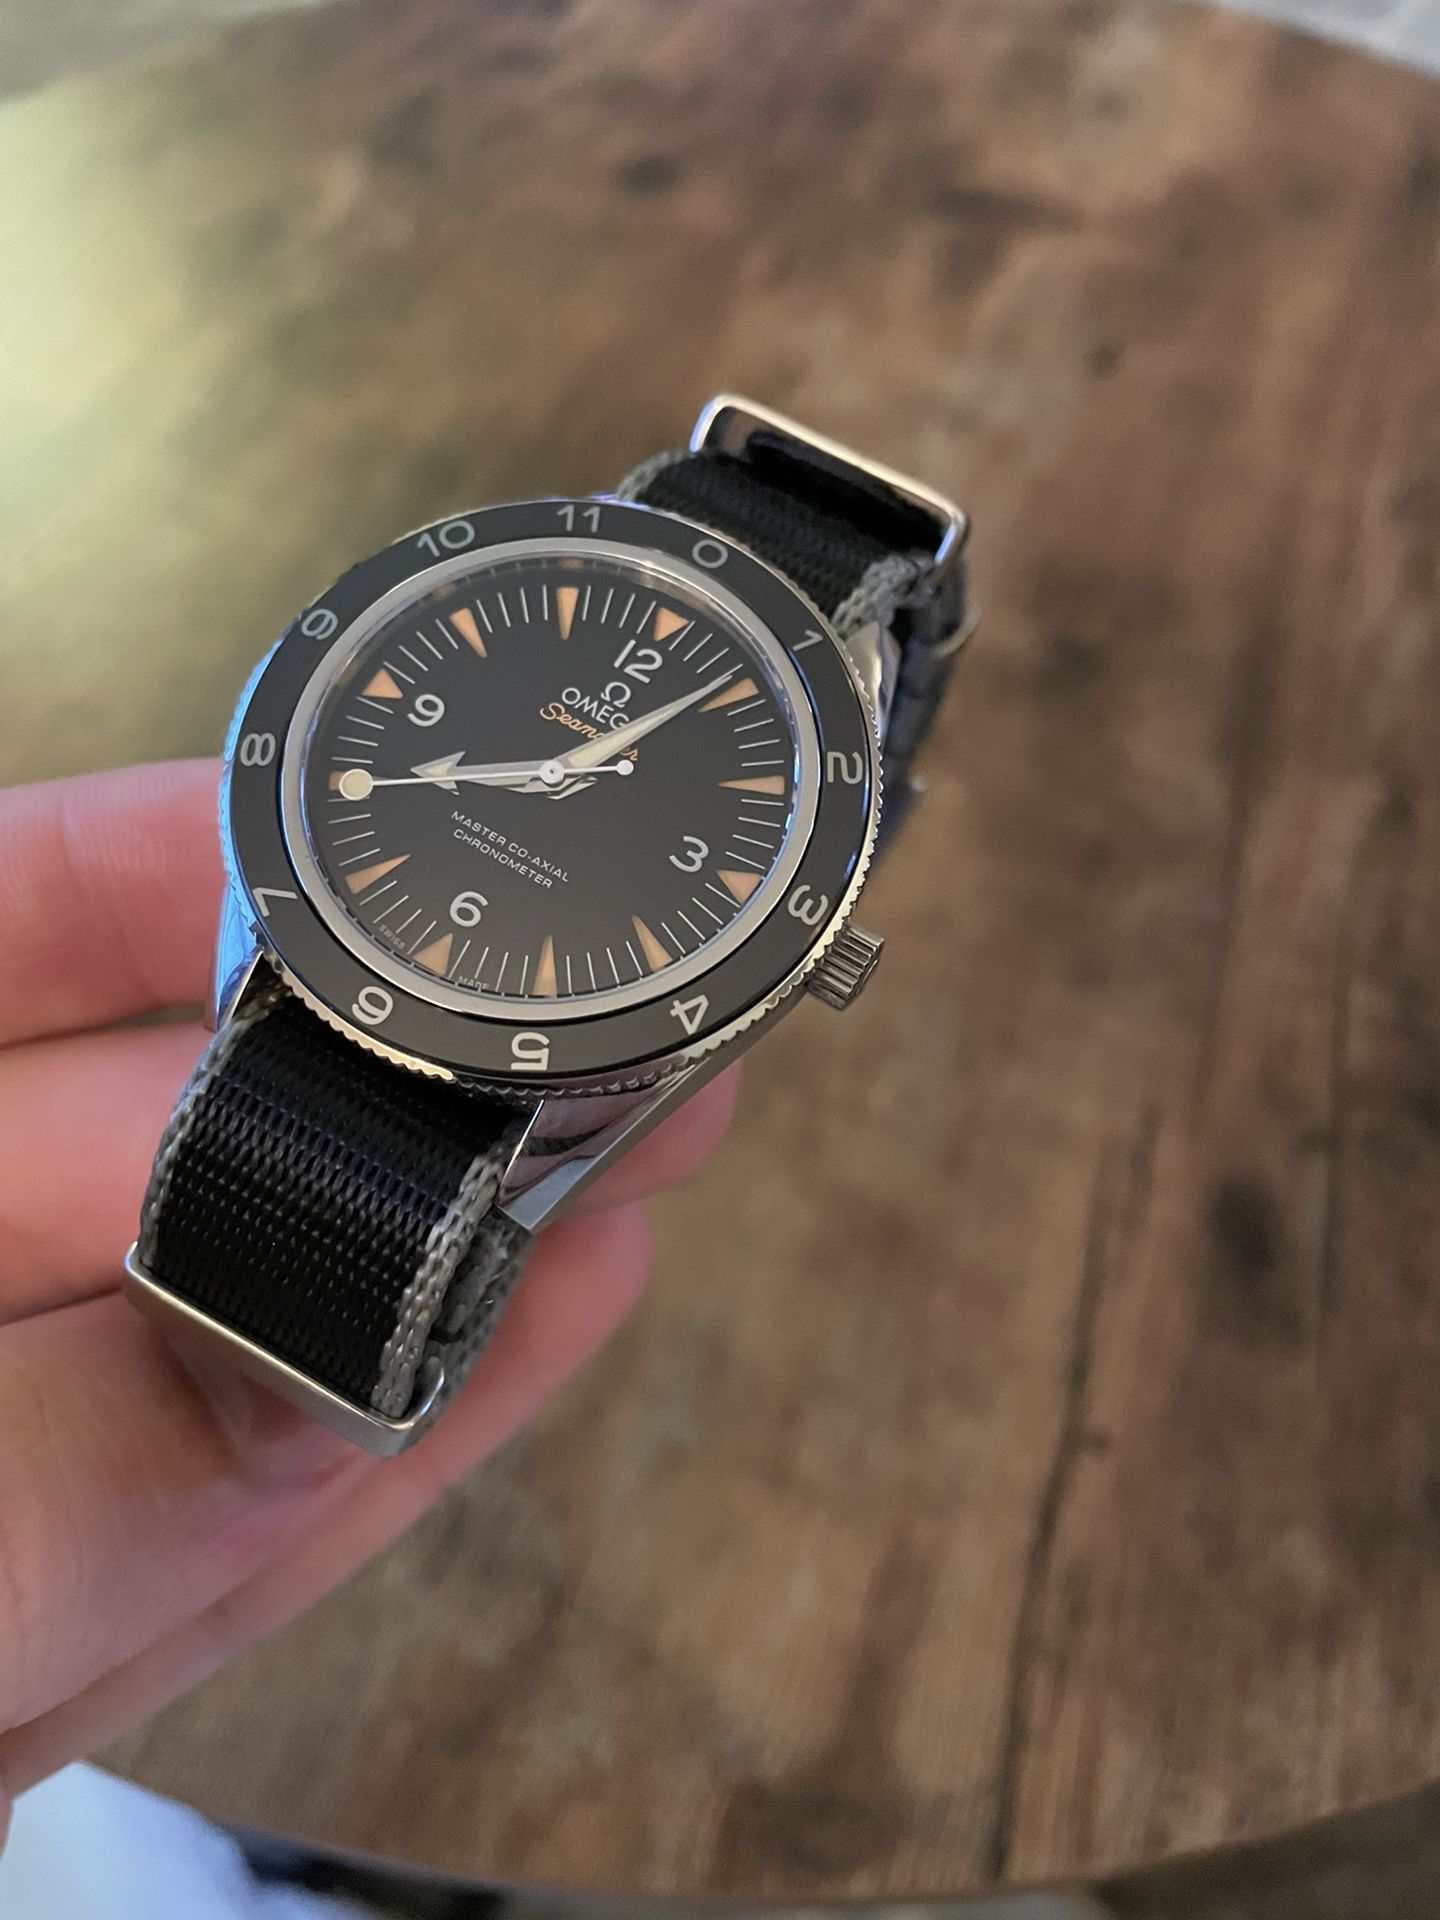 OMEGA Seamaster Men's Black Watch